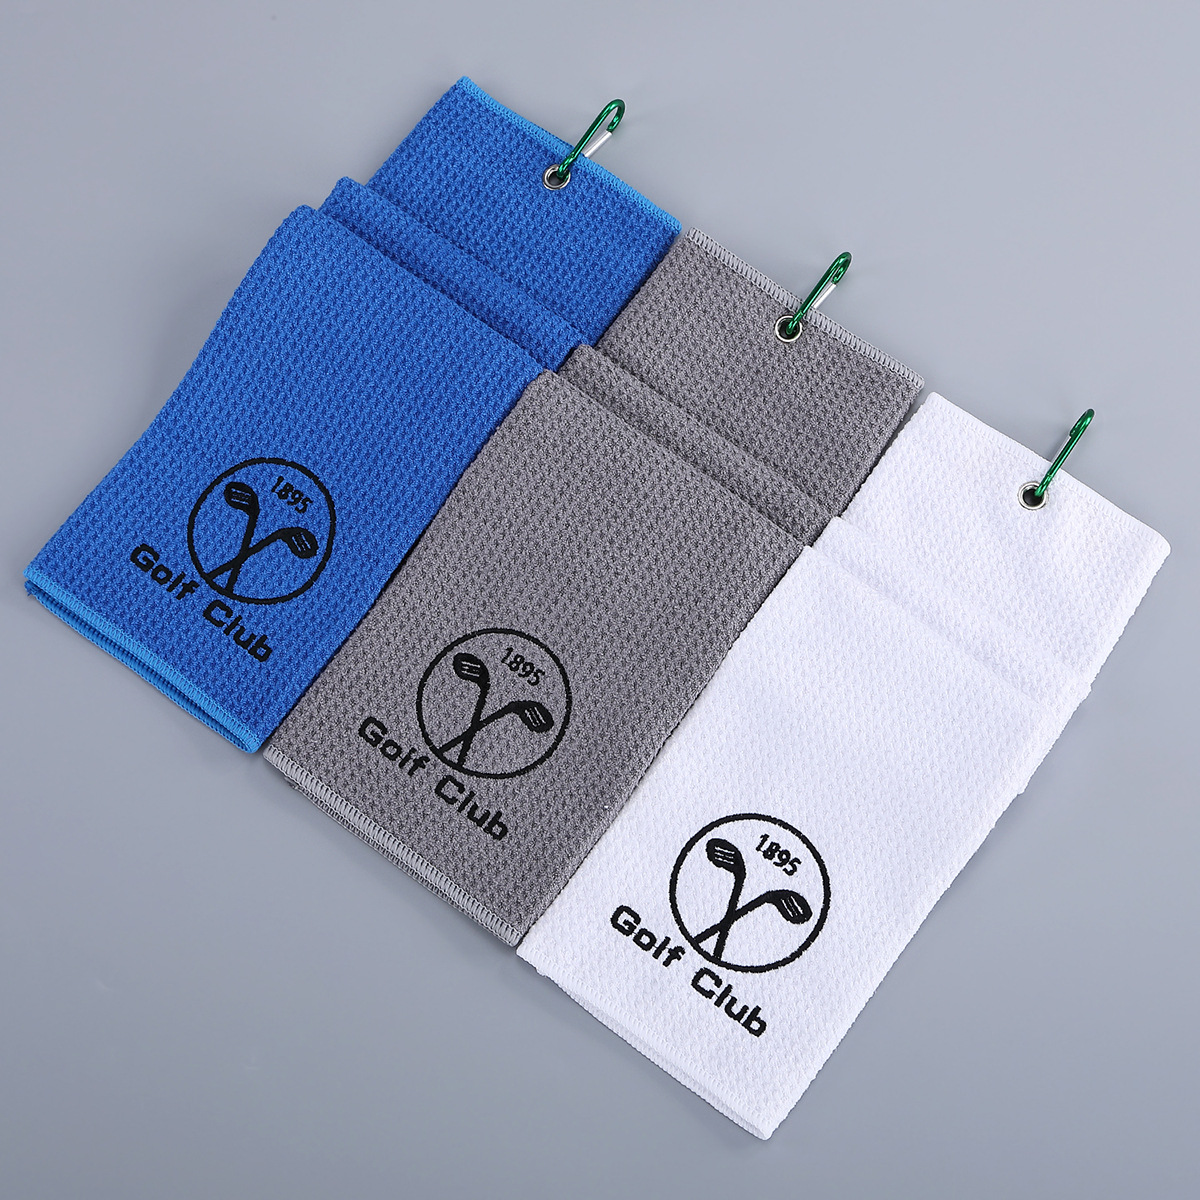 华夫格高尔夫毛巾 刺绣logo运动毛巾 便携挂扣高尔夫毛巾